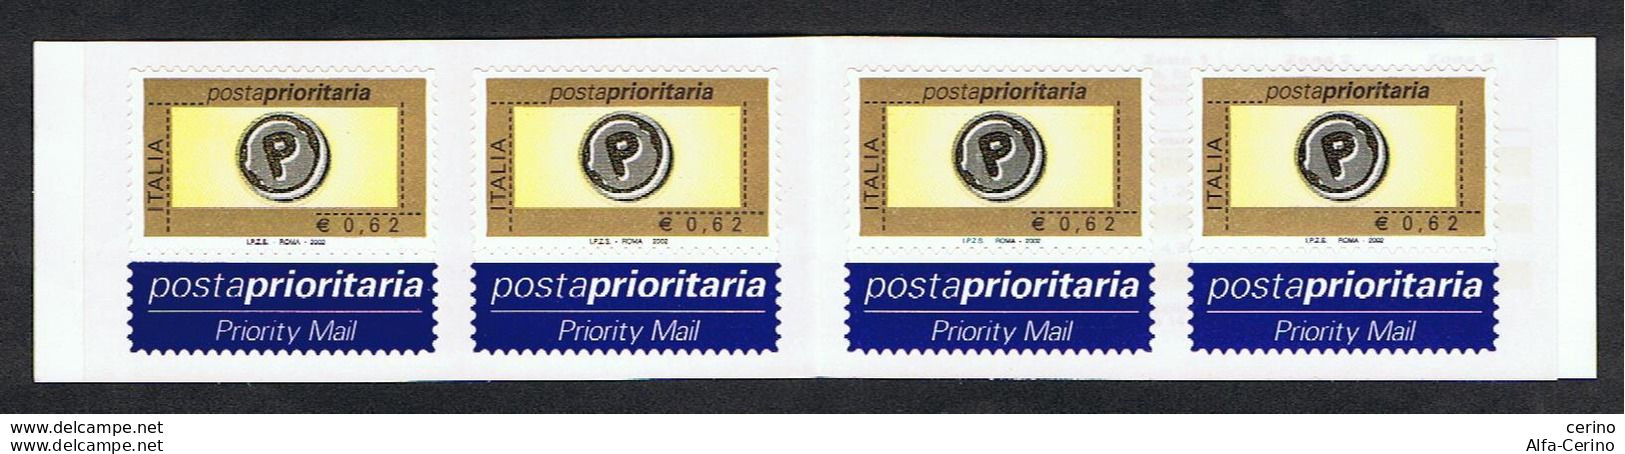 REPUBBLICA:  2002  LIBRETTO  POSTA  PRIORITARIA  -  €. 0,62 X 4  POLICROMO  -  SASS. 24 - Carnets